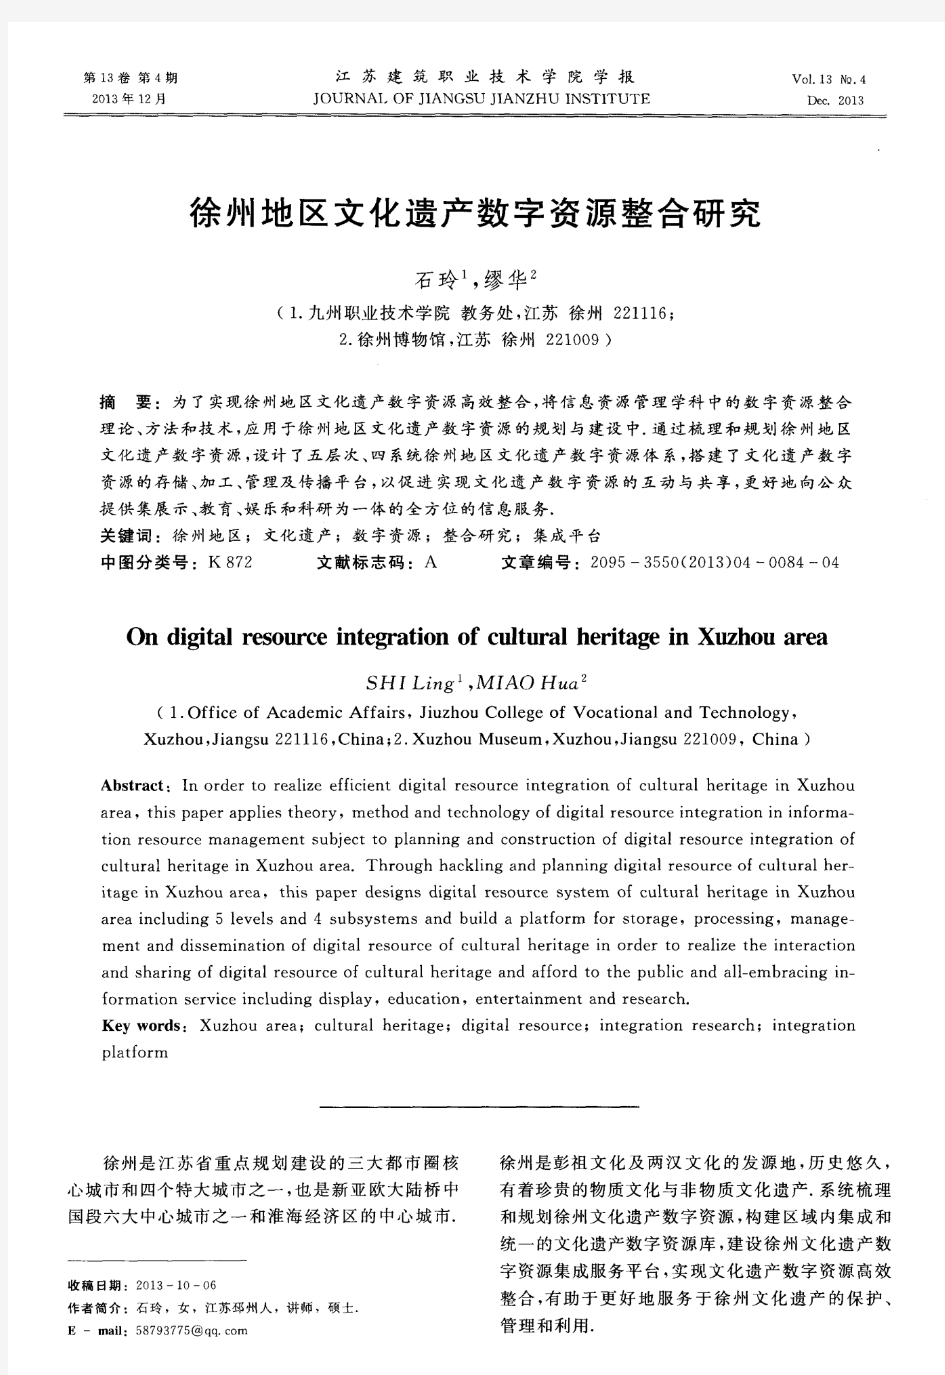 徐州地区文化遗产数字资源整合研究